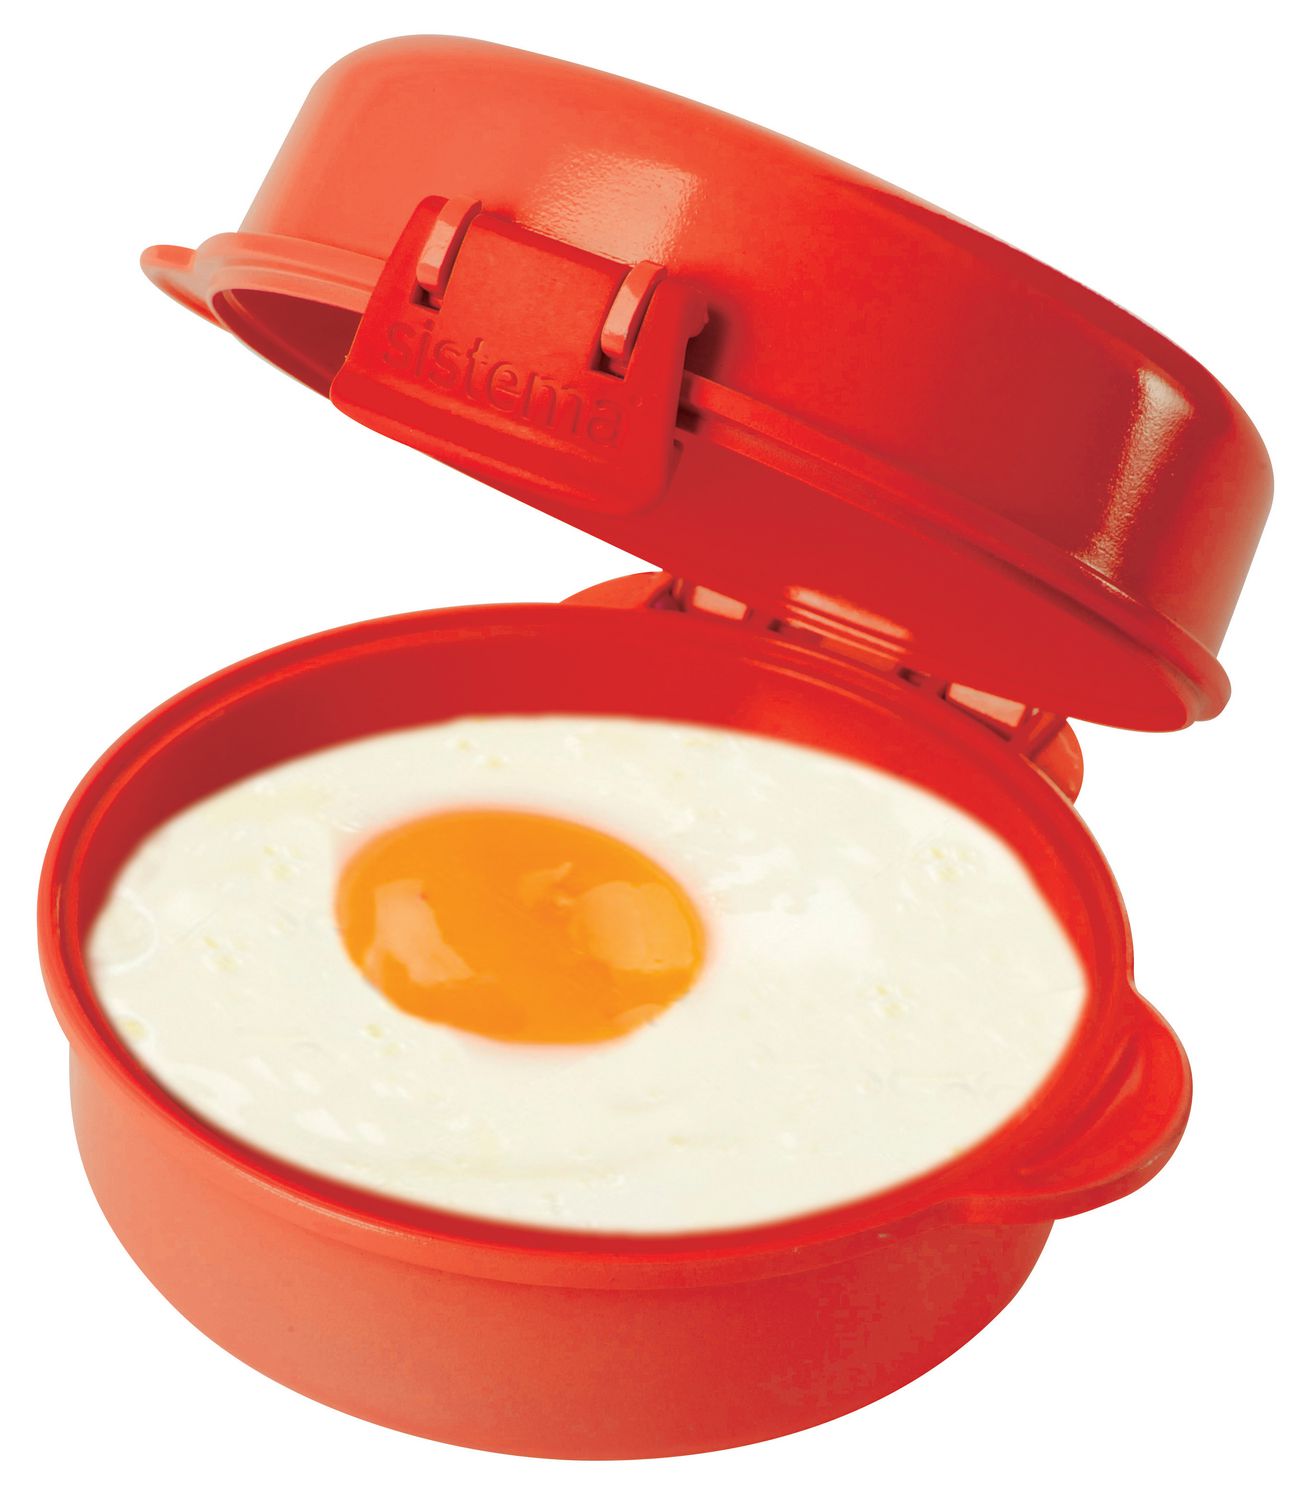 Oeufs simples au micro-ondes Omelette au micro-ondes, Cuiseur à œufs frits  pochés, Cuiseur à œufs en plastique, Four à micro-ondes